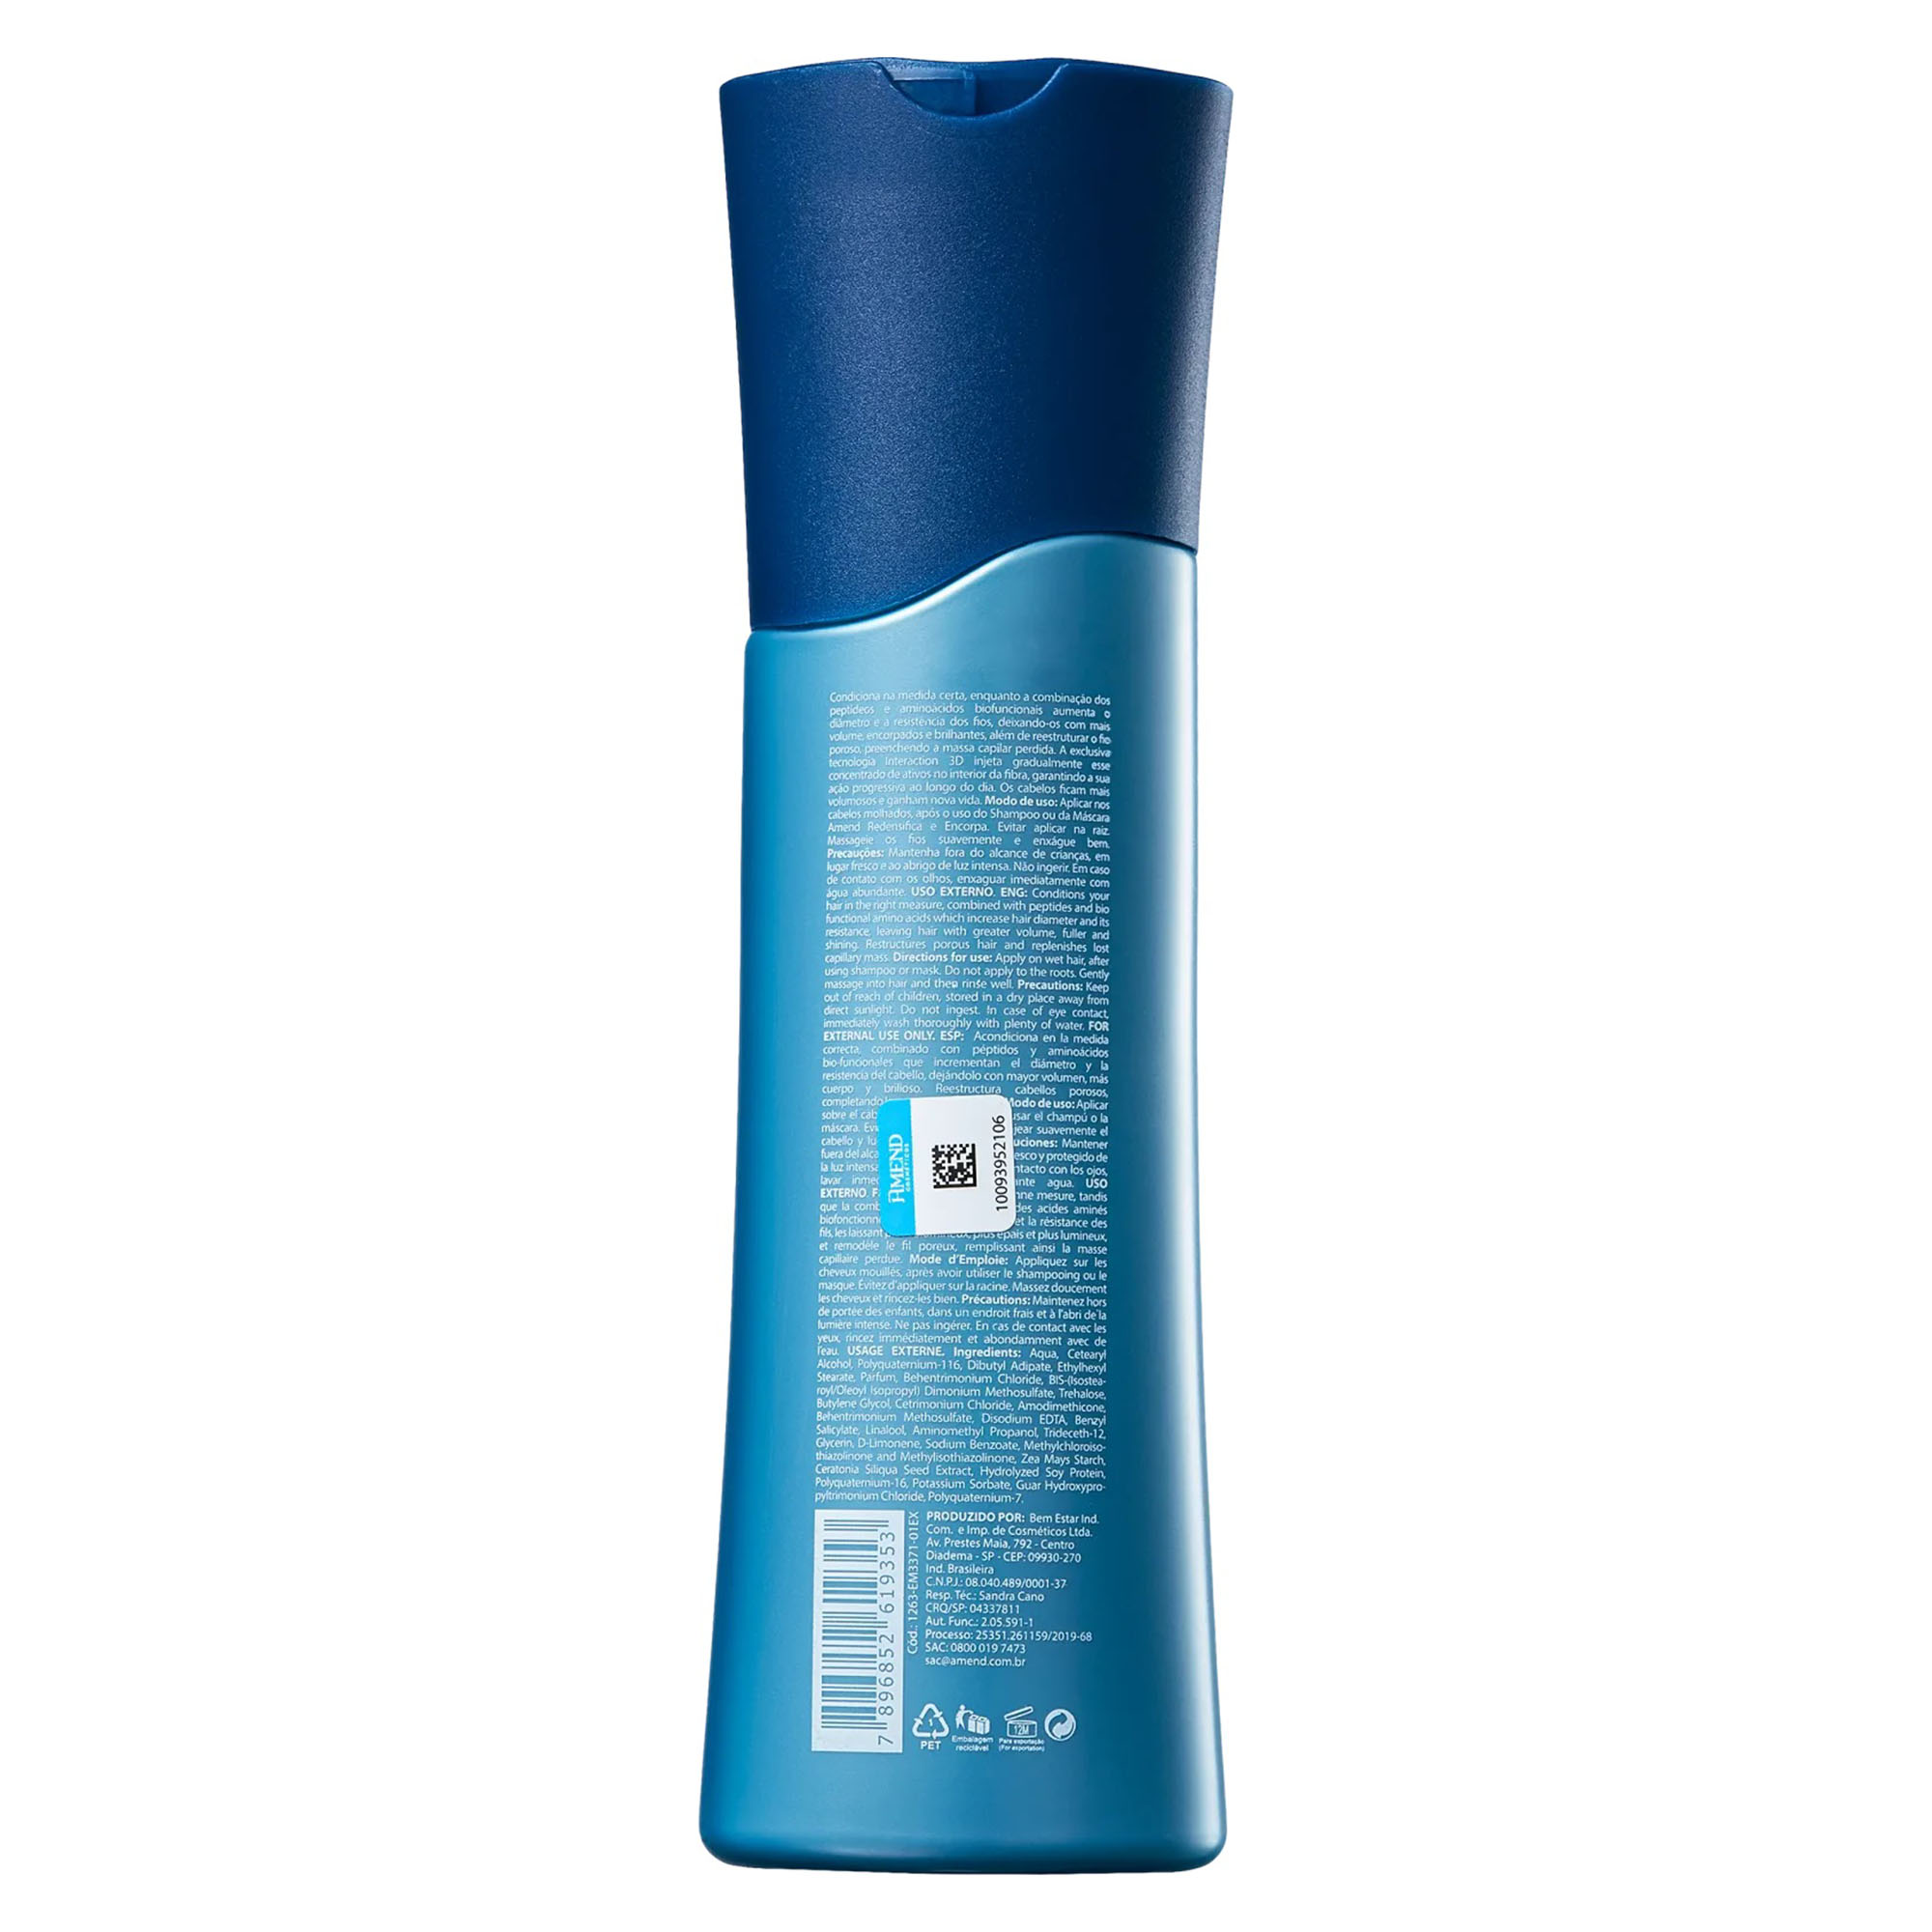 Kit Amend Redensifica e Encorpa Shampoo 250ml + Condicionador 250ml - Foto 4